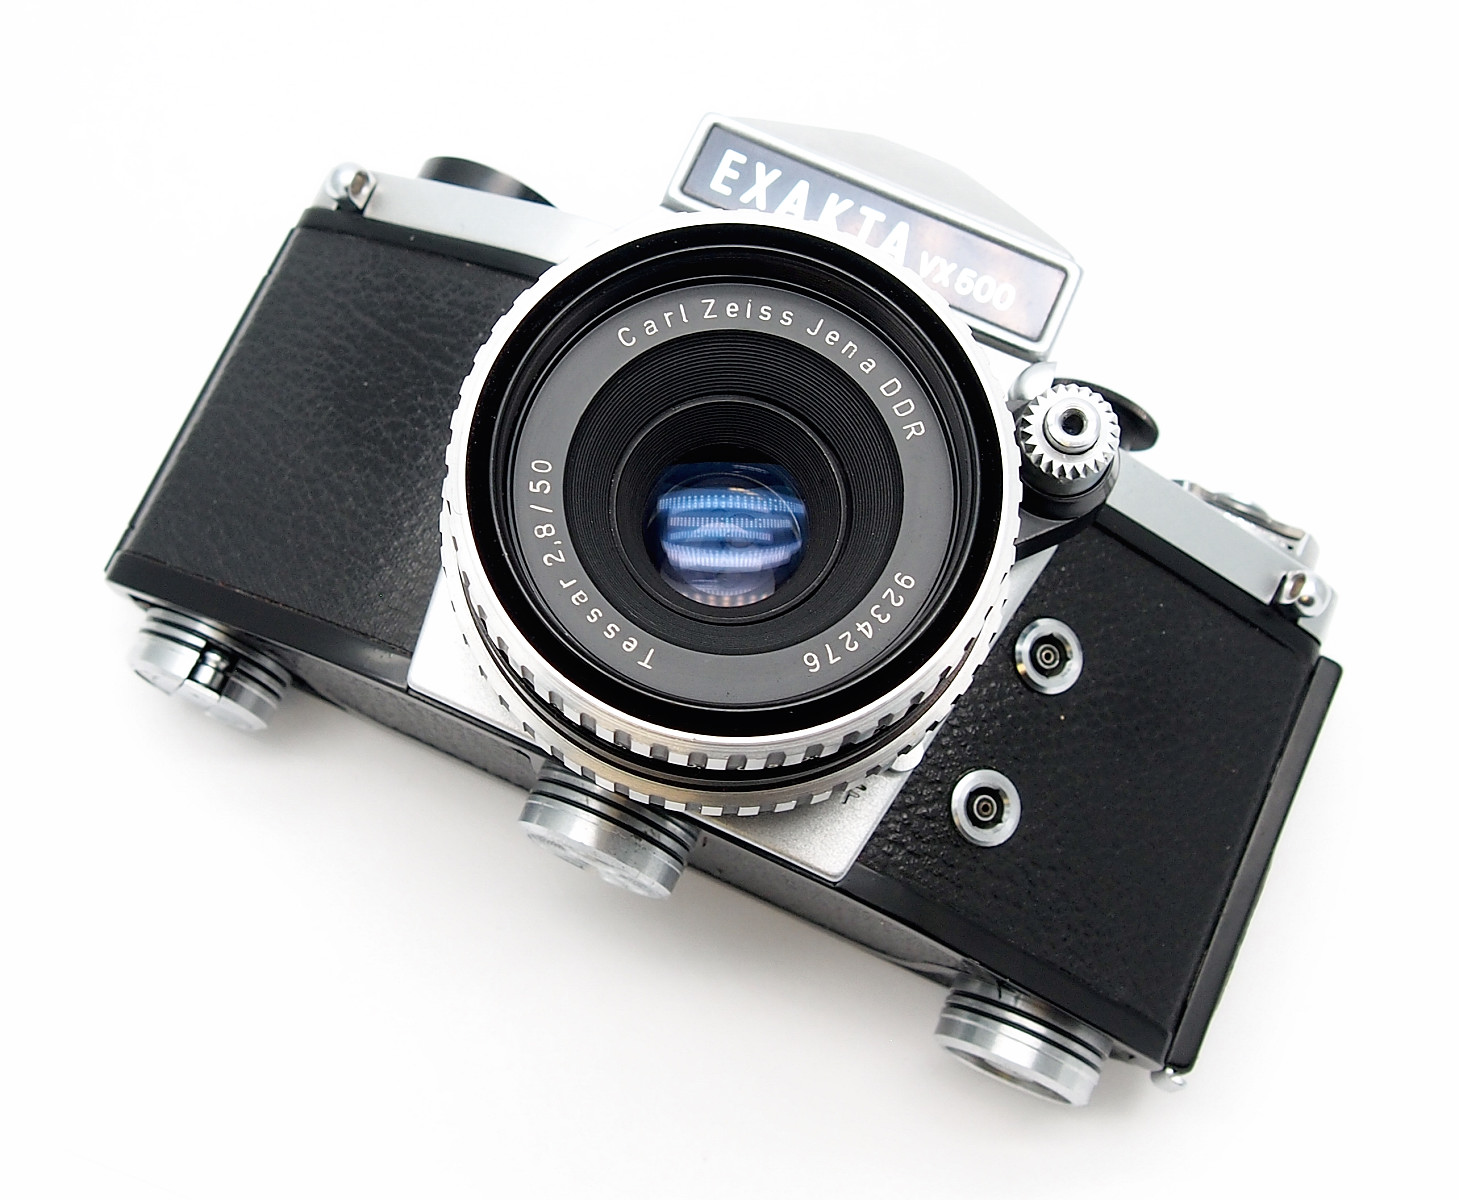 Exakta VX500 with Zeiss Tessar 50mm F2.8, Mint- #8694